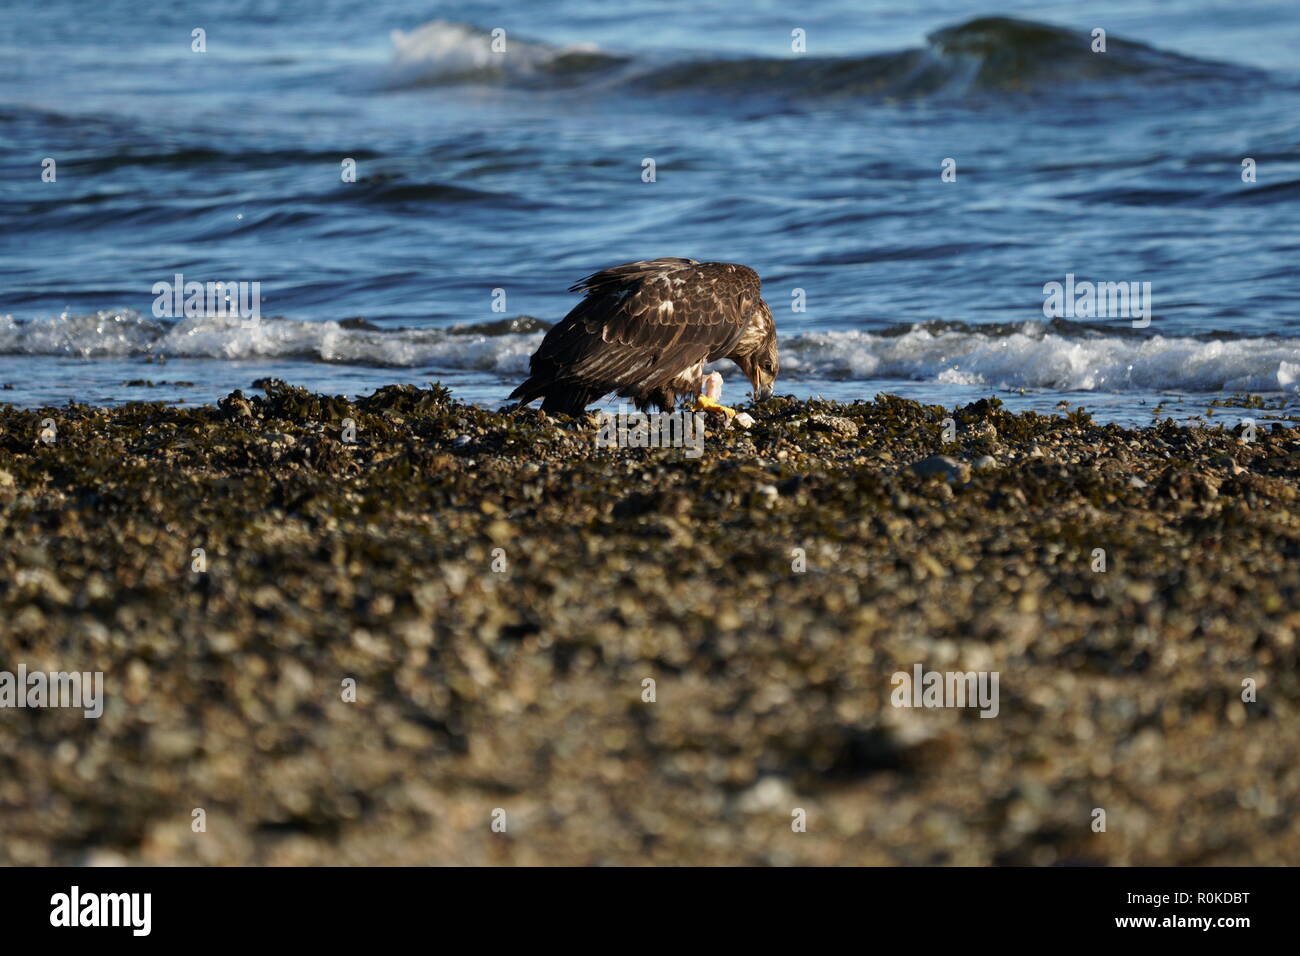 A Juvenile bald eagle eating fish on the beach of Sunshine Coast BC Canada Stock Photo